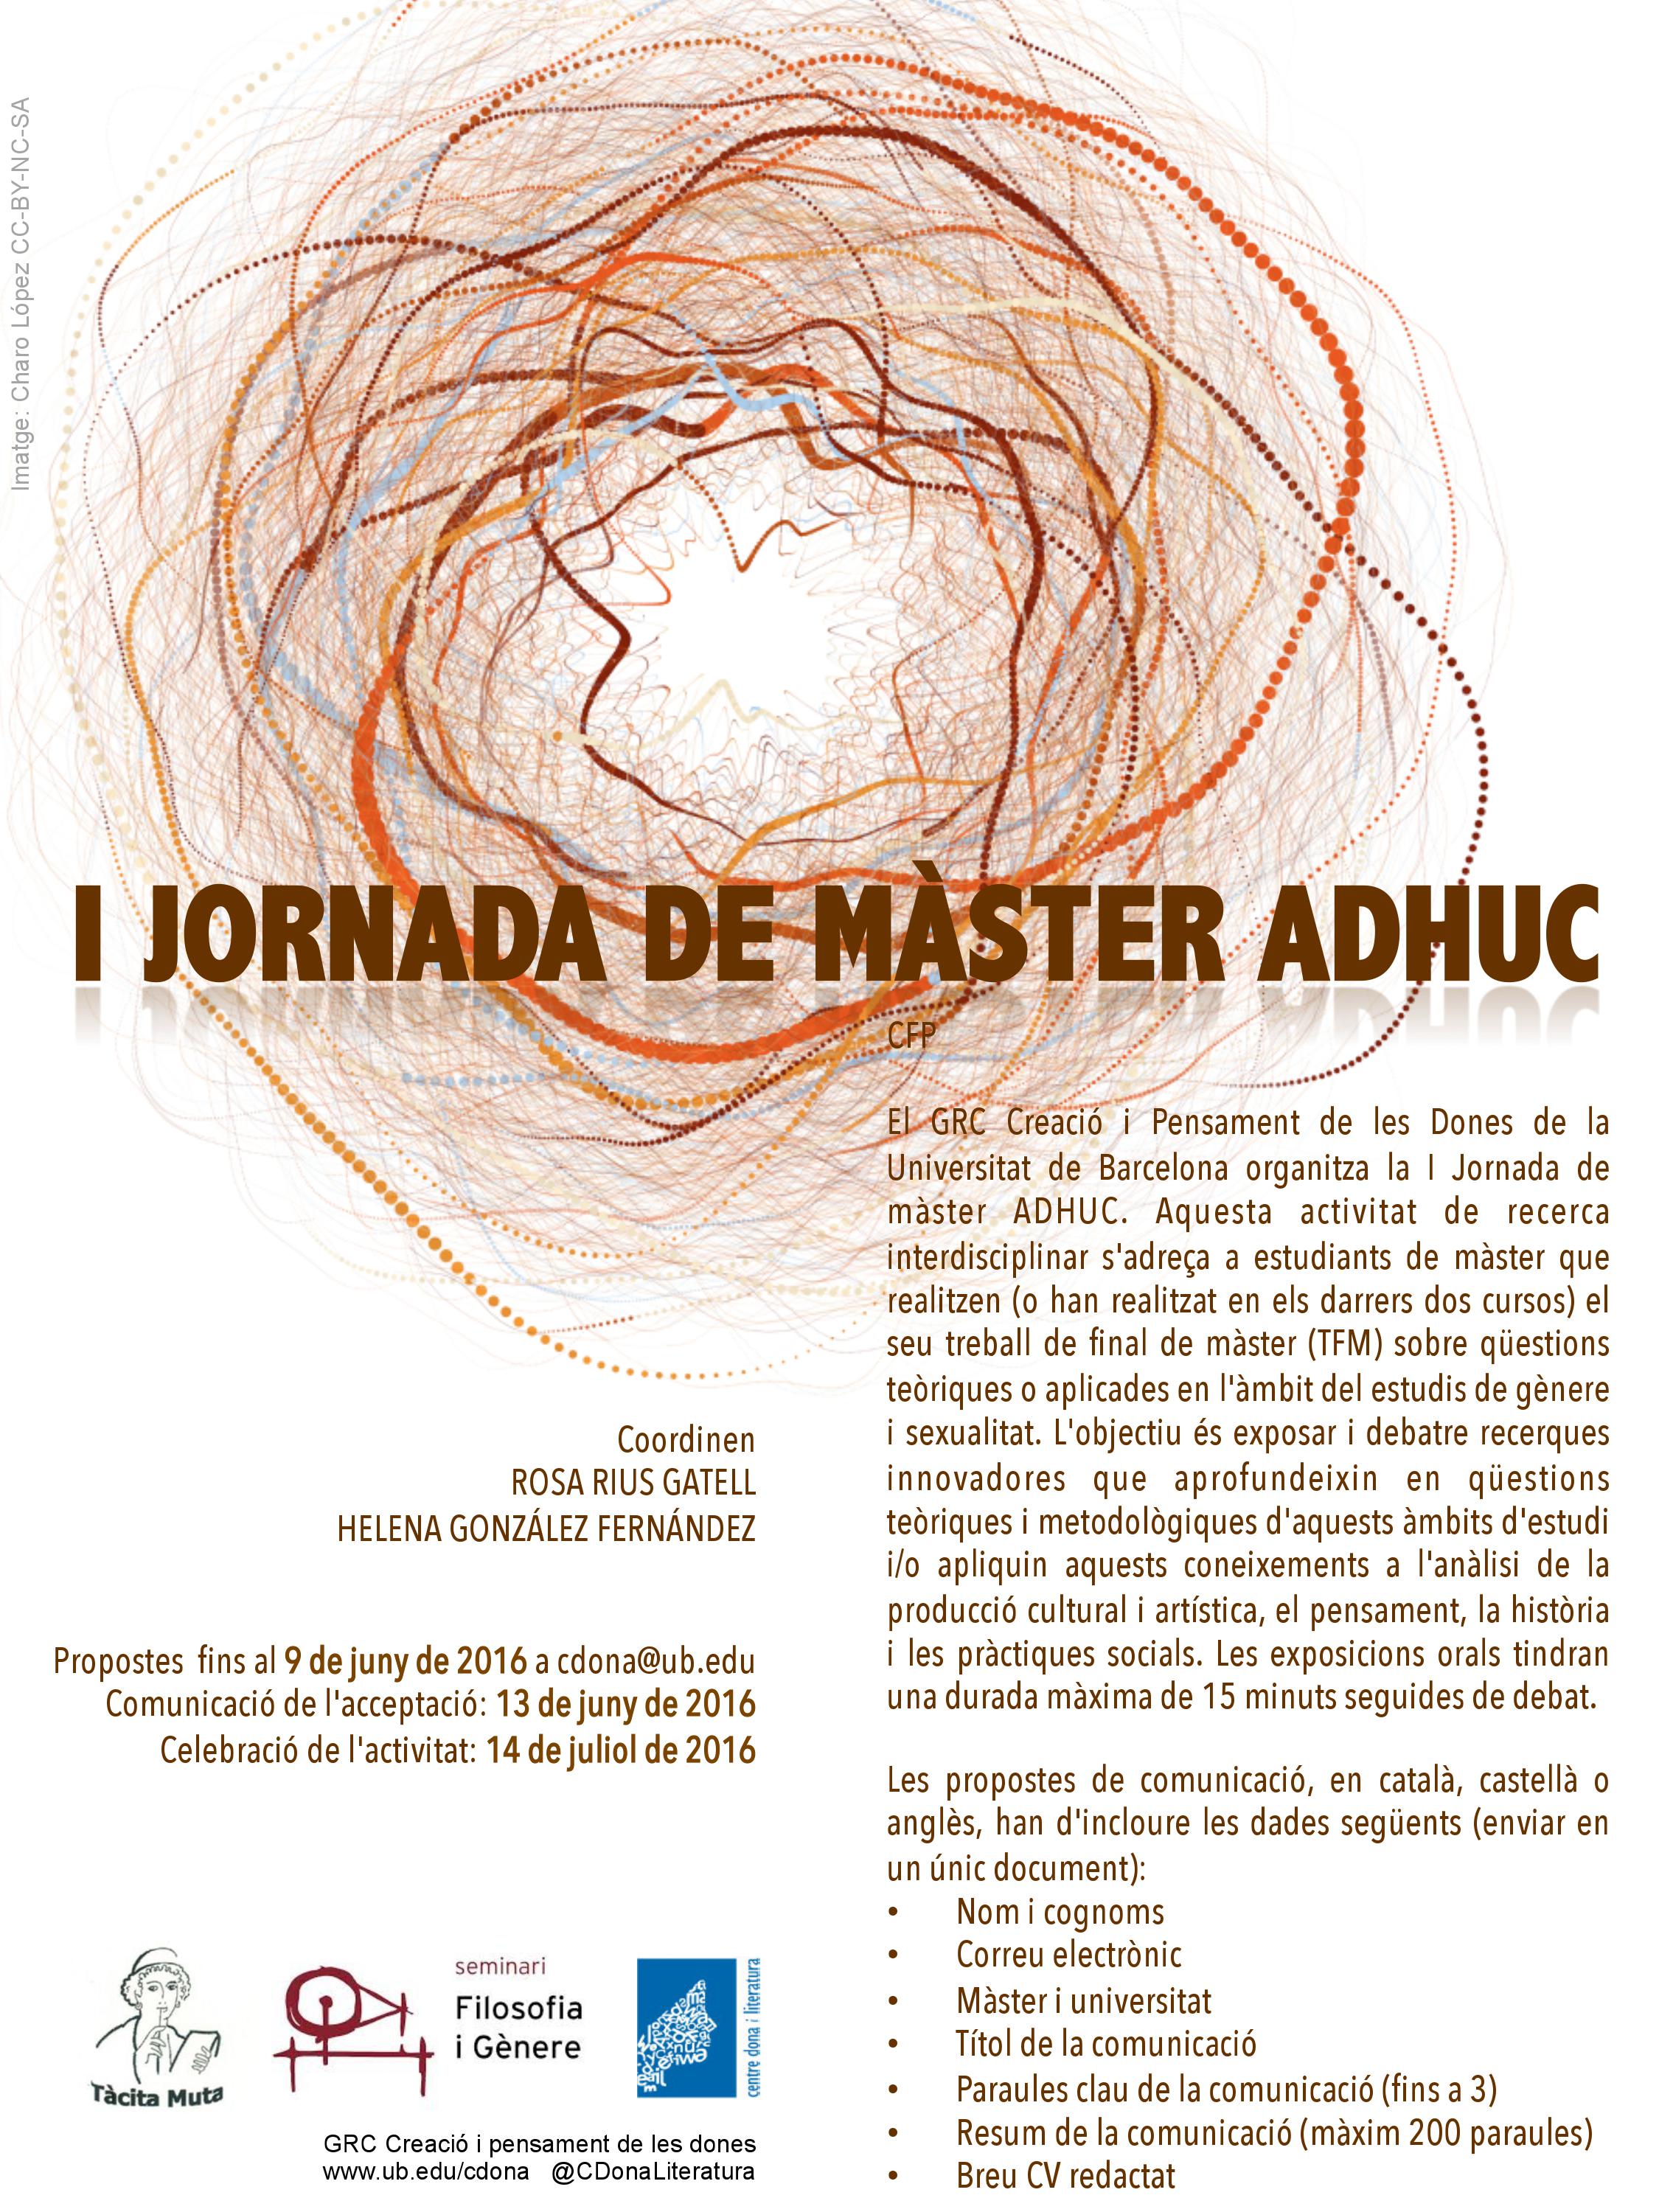 Centre Dona i Literatura: 1ª Jornada de Màster ADHUC a Barcelona